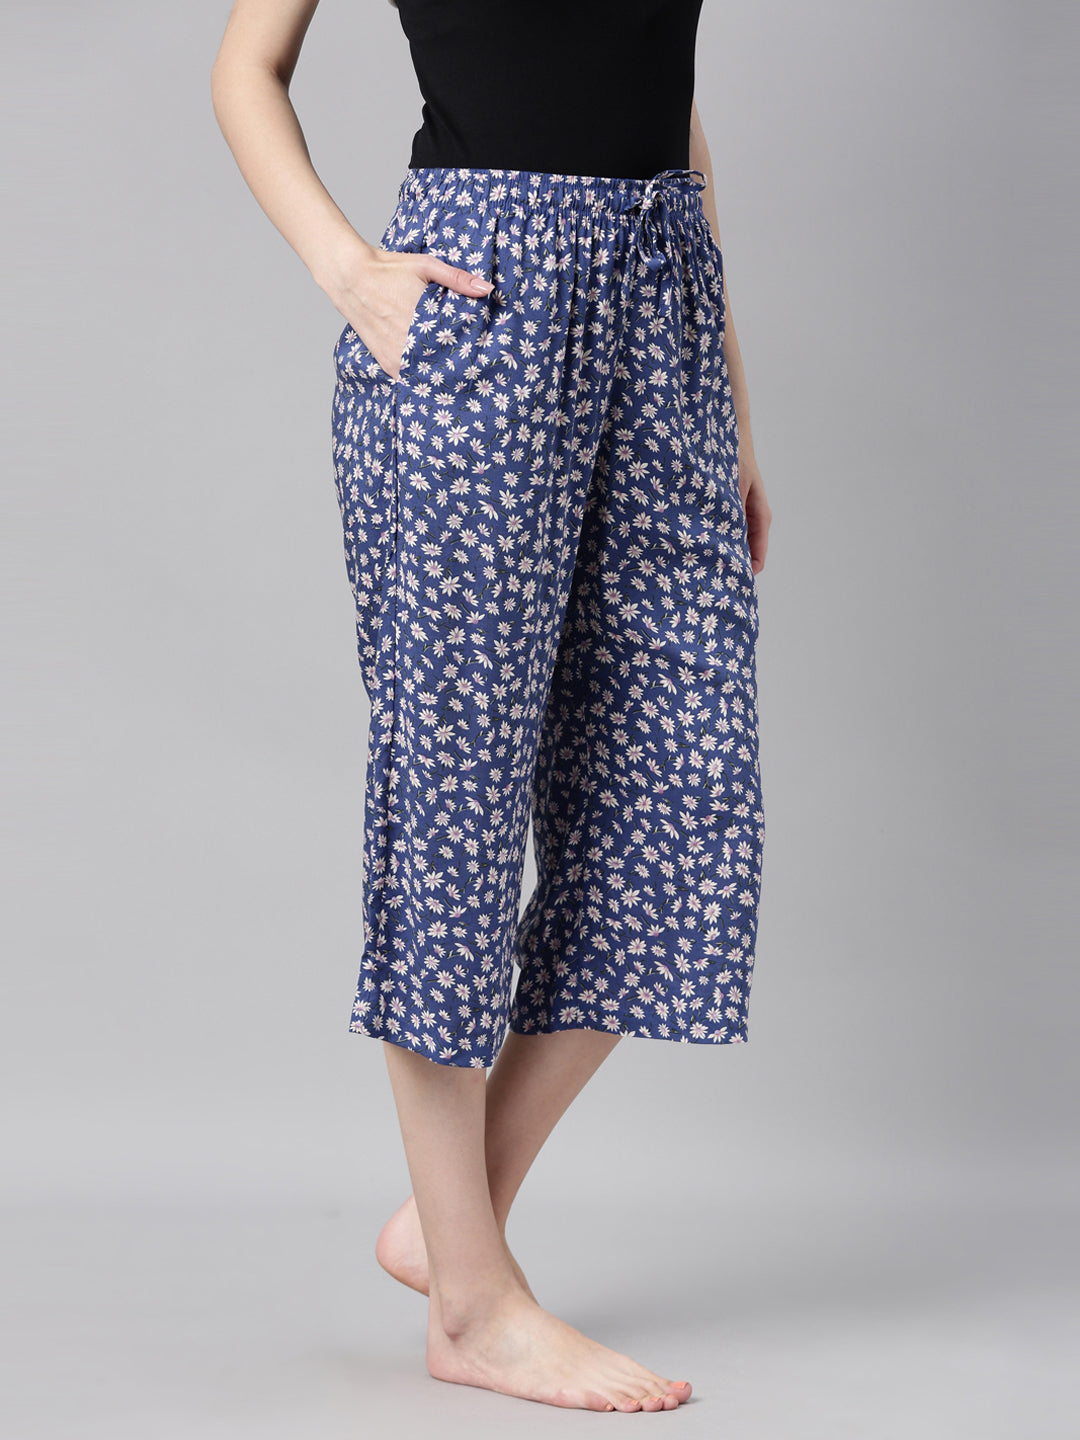 Printed Blue Lounge Capri Pants for Women  Buy Online at GoColors